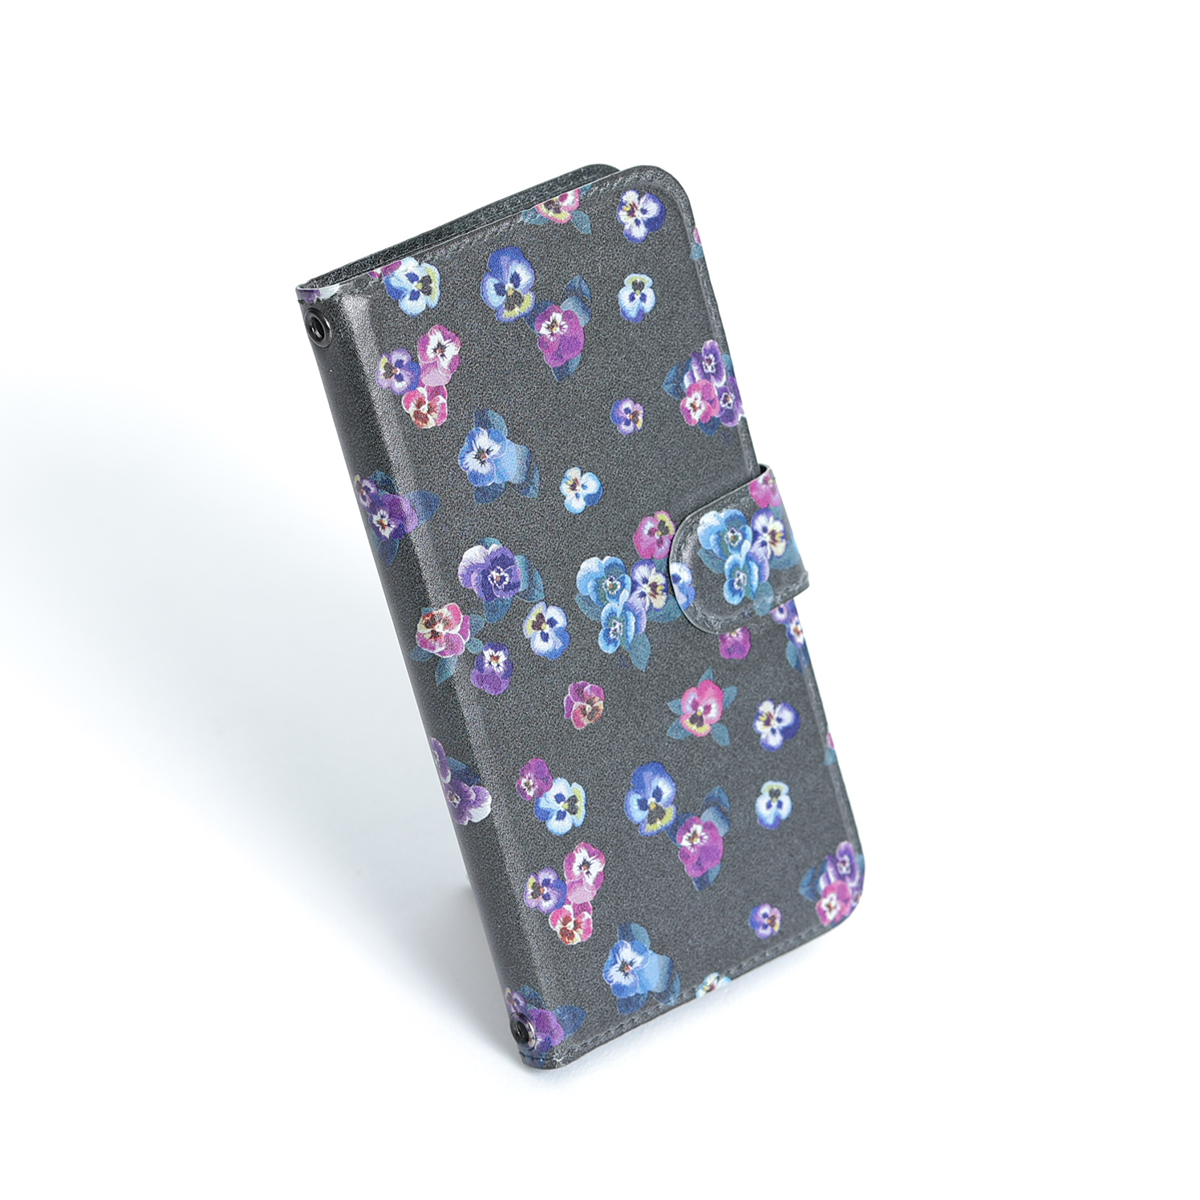 11月下旬お届け予定ご受注商品『Viola』 iphone notebook type case画像